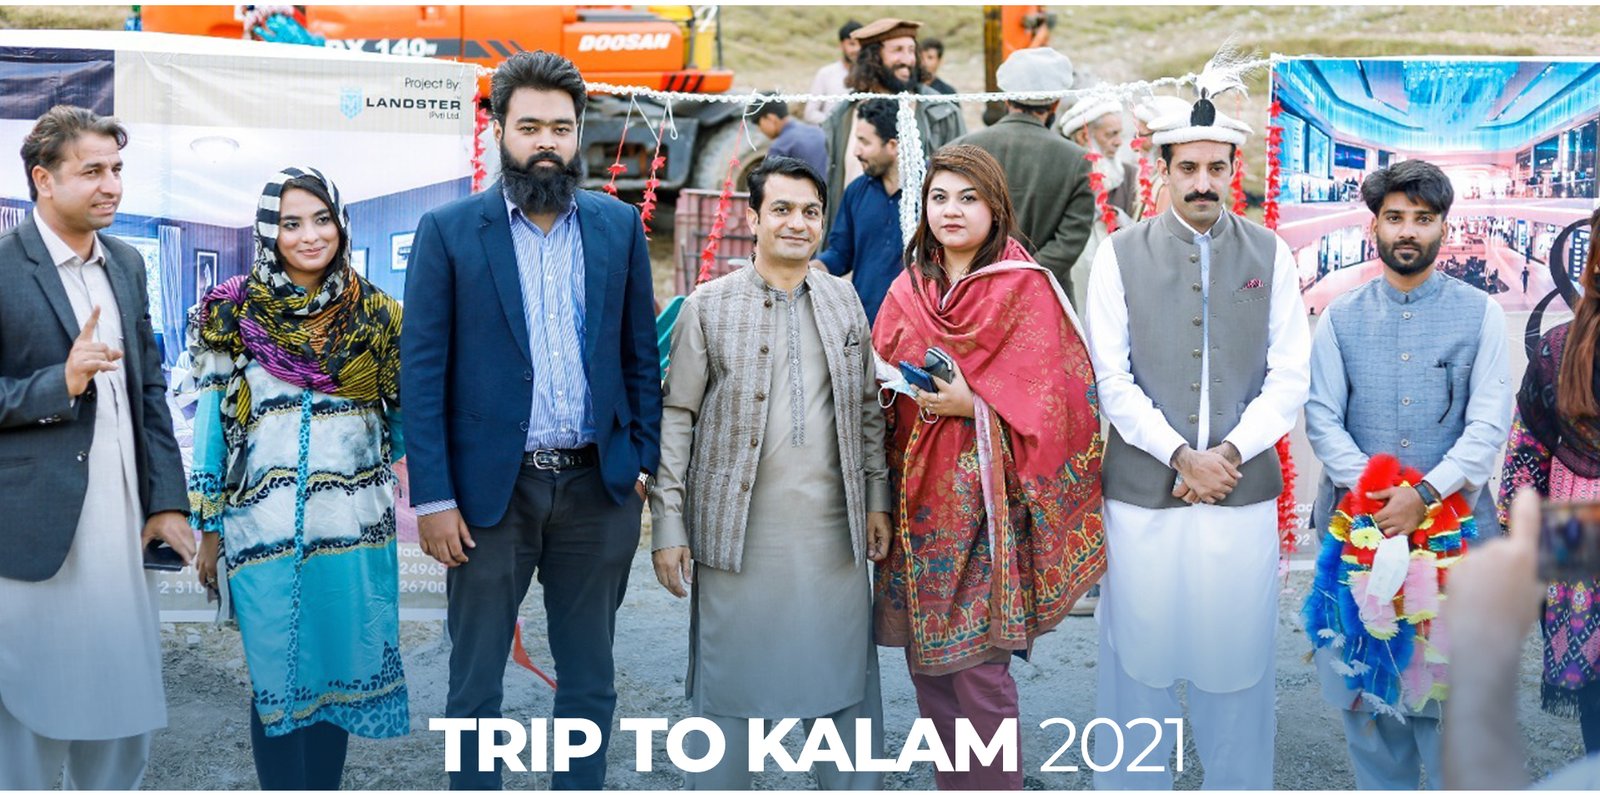 TRIP TO KALAM 2021 copy 2